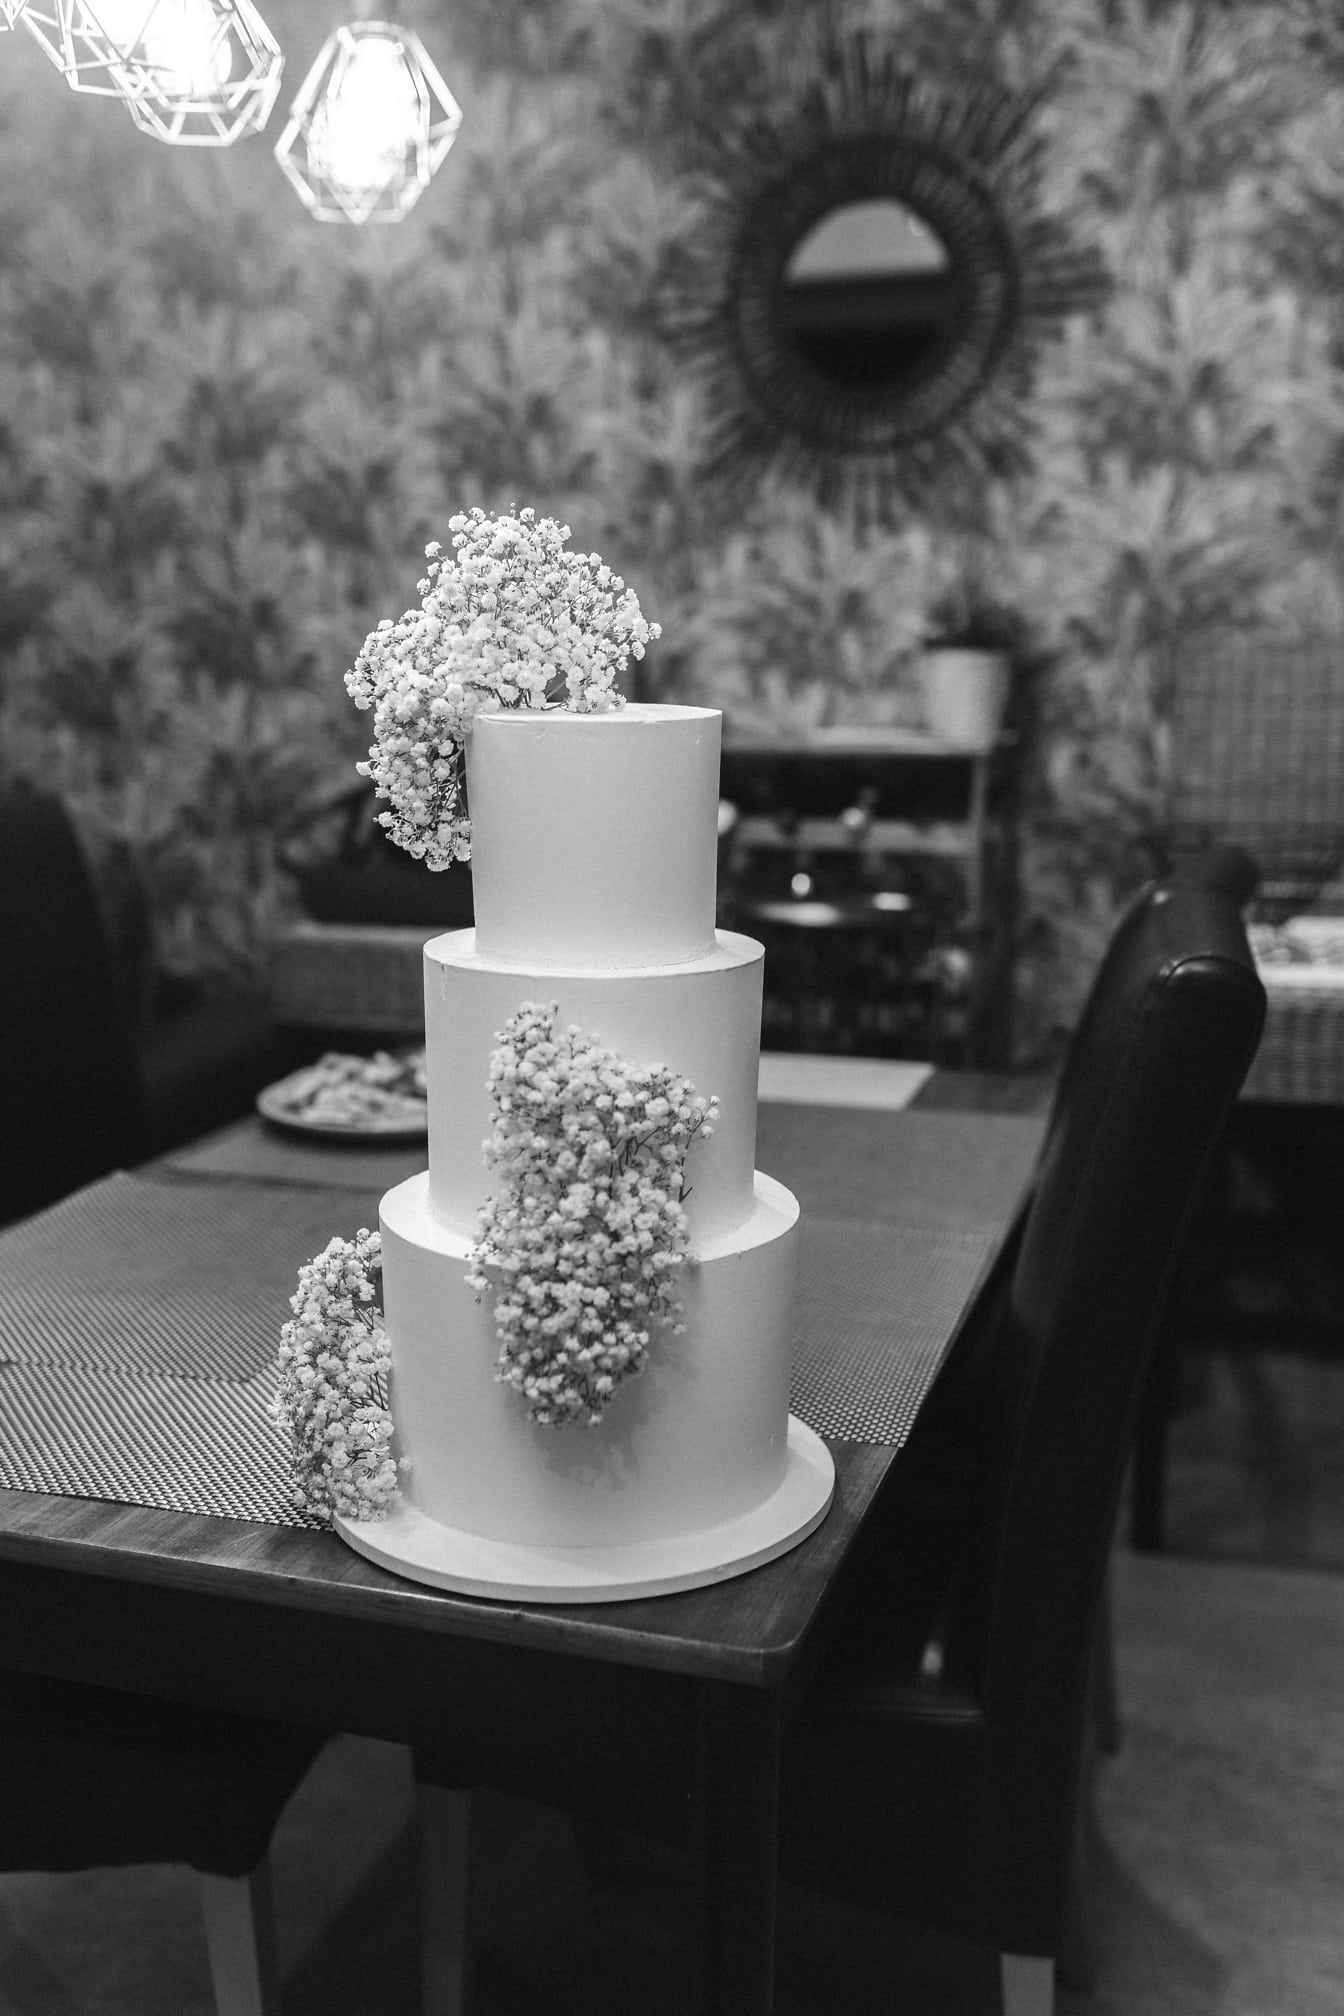 Μονόχρωμη φωτογραφία κομψής γαμήλιας τούρτας στο τραπέζι του εστιατορίου